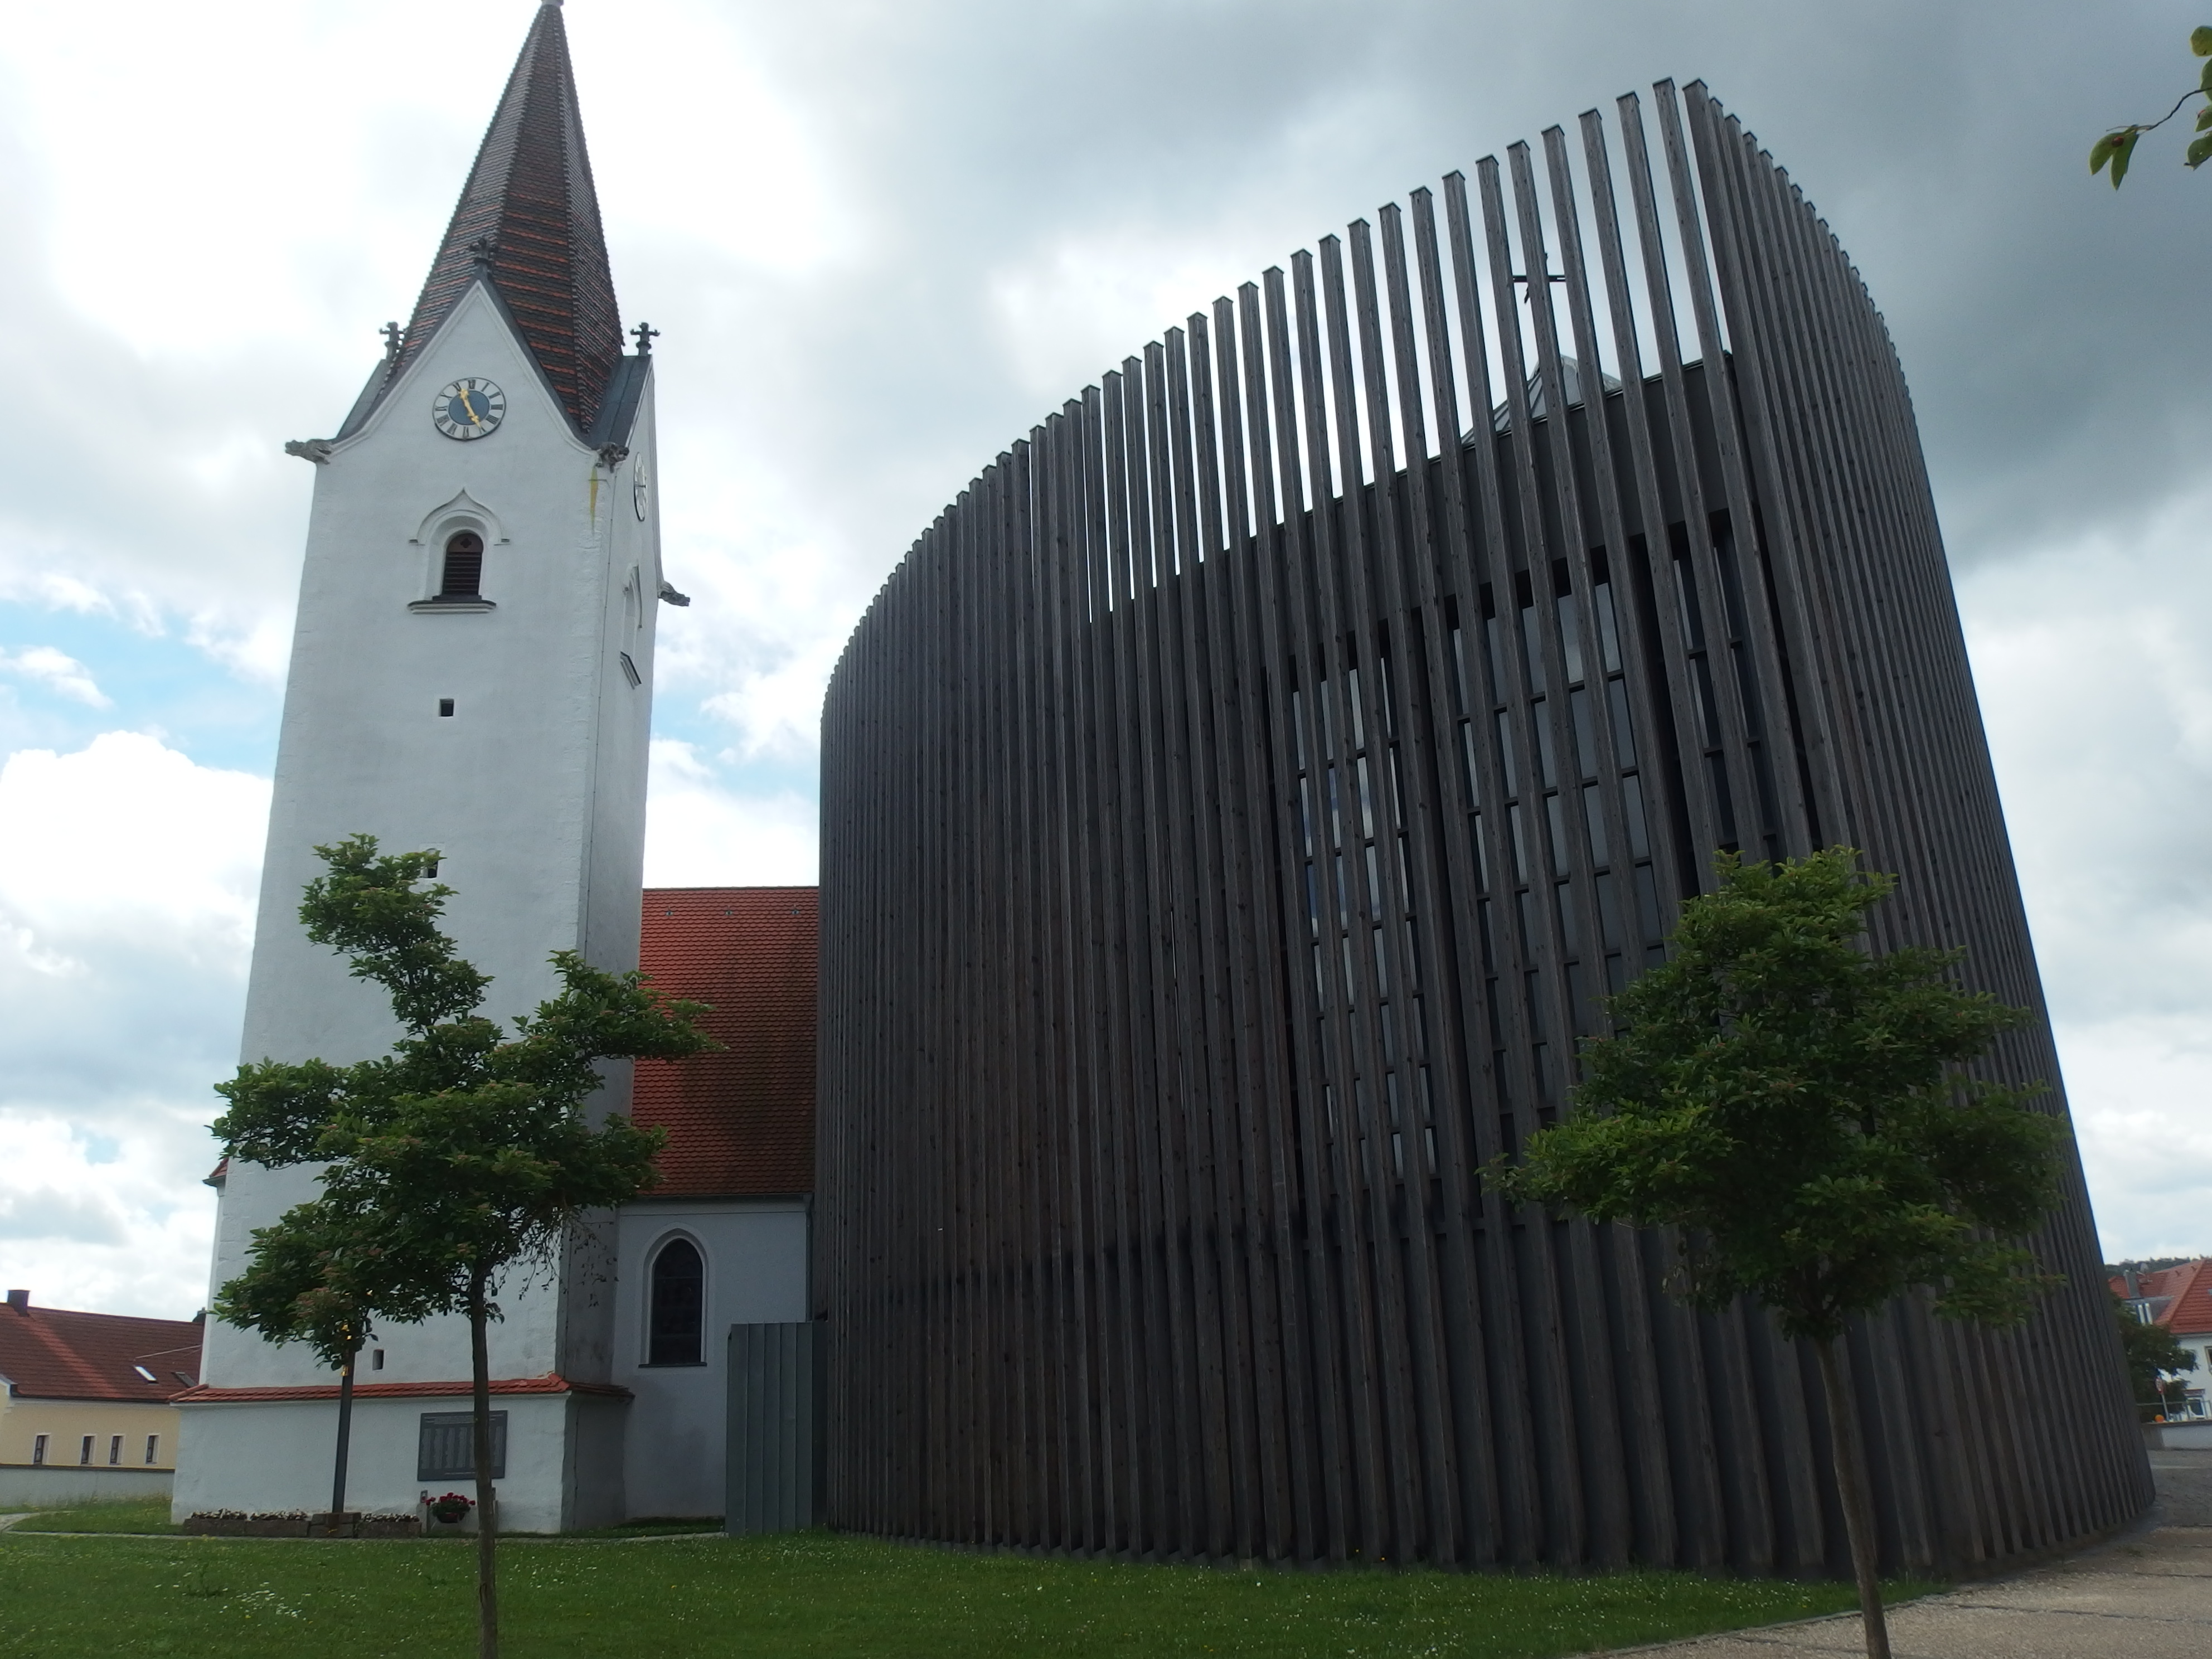 katholische Kirche in Wenzenbach, von Norden gesehen